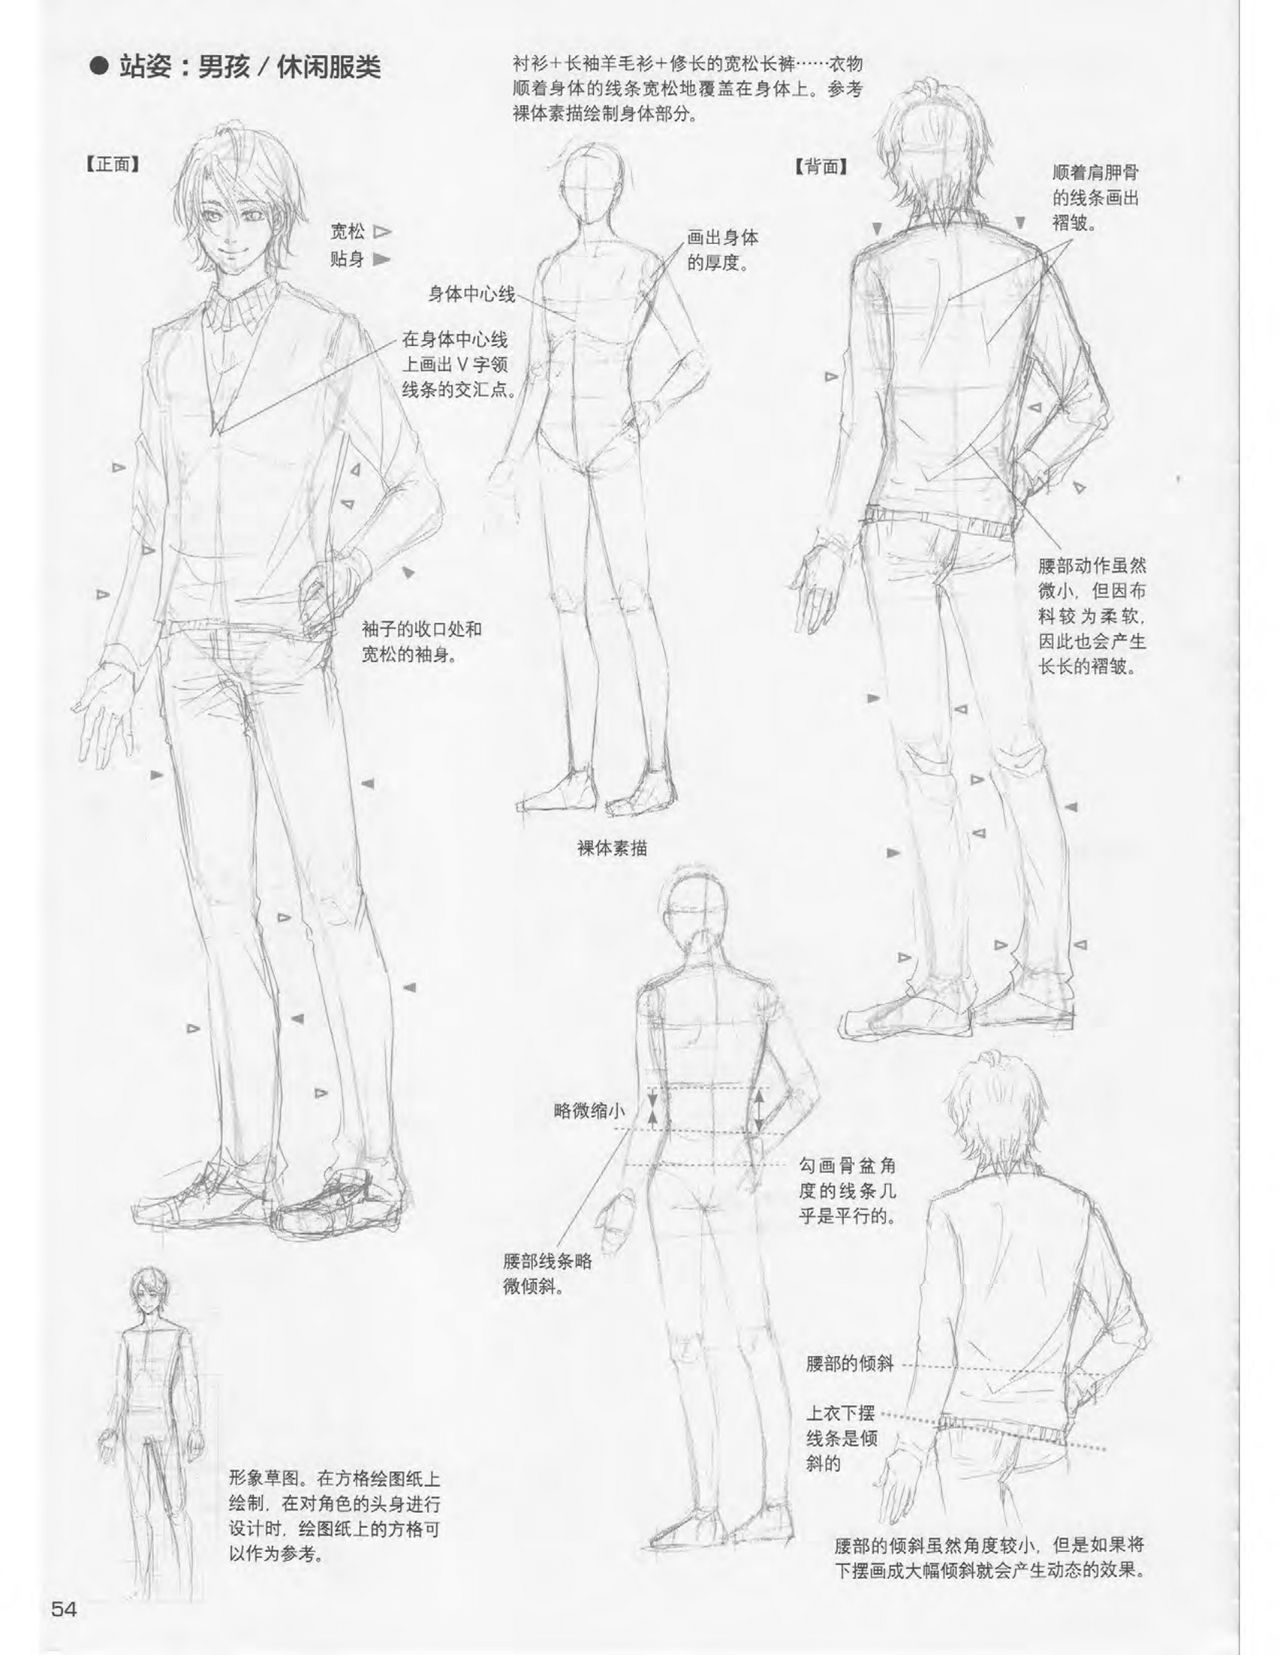 Japanese Manga Master Lecture 3: Lin Akira and Kakumaru Maru Talk About Glamorous Character Modeling 54